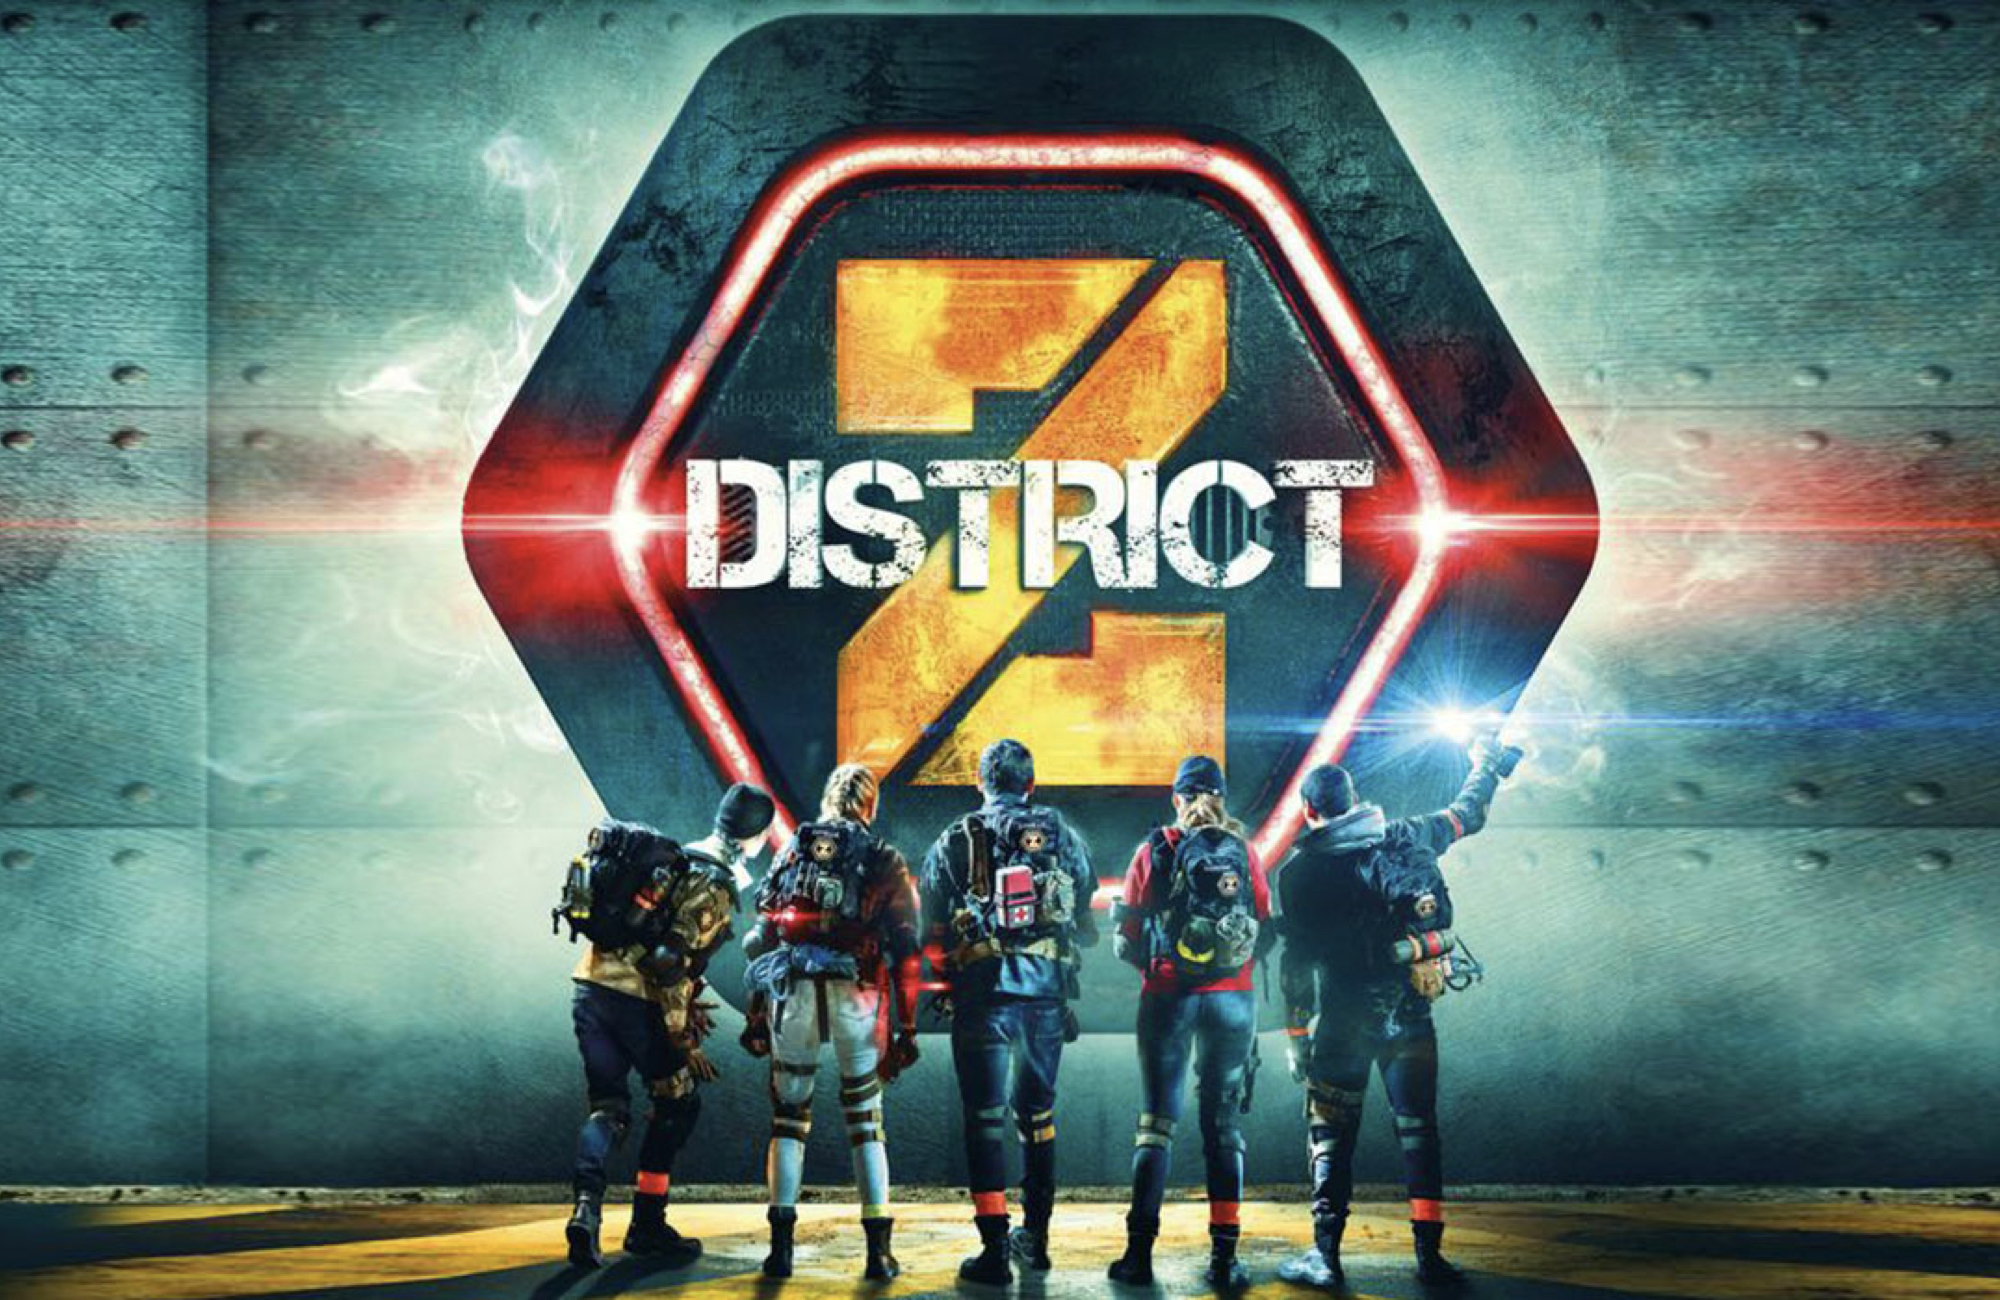  Le logo de l'émission District Z @TF1